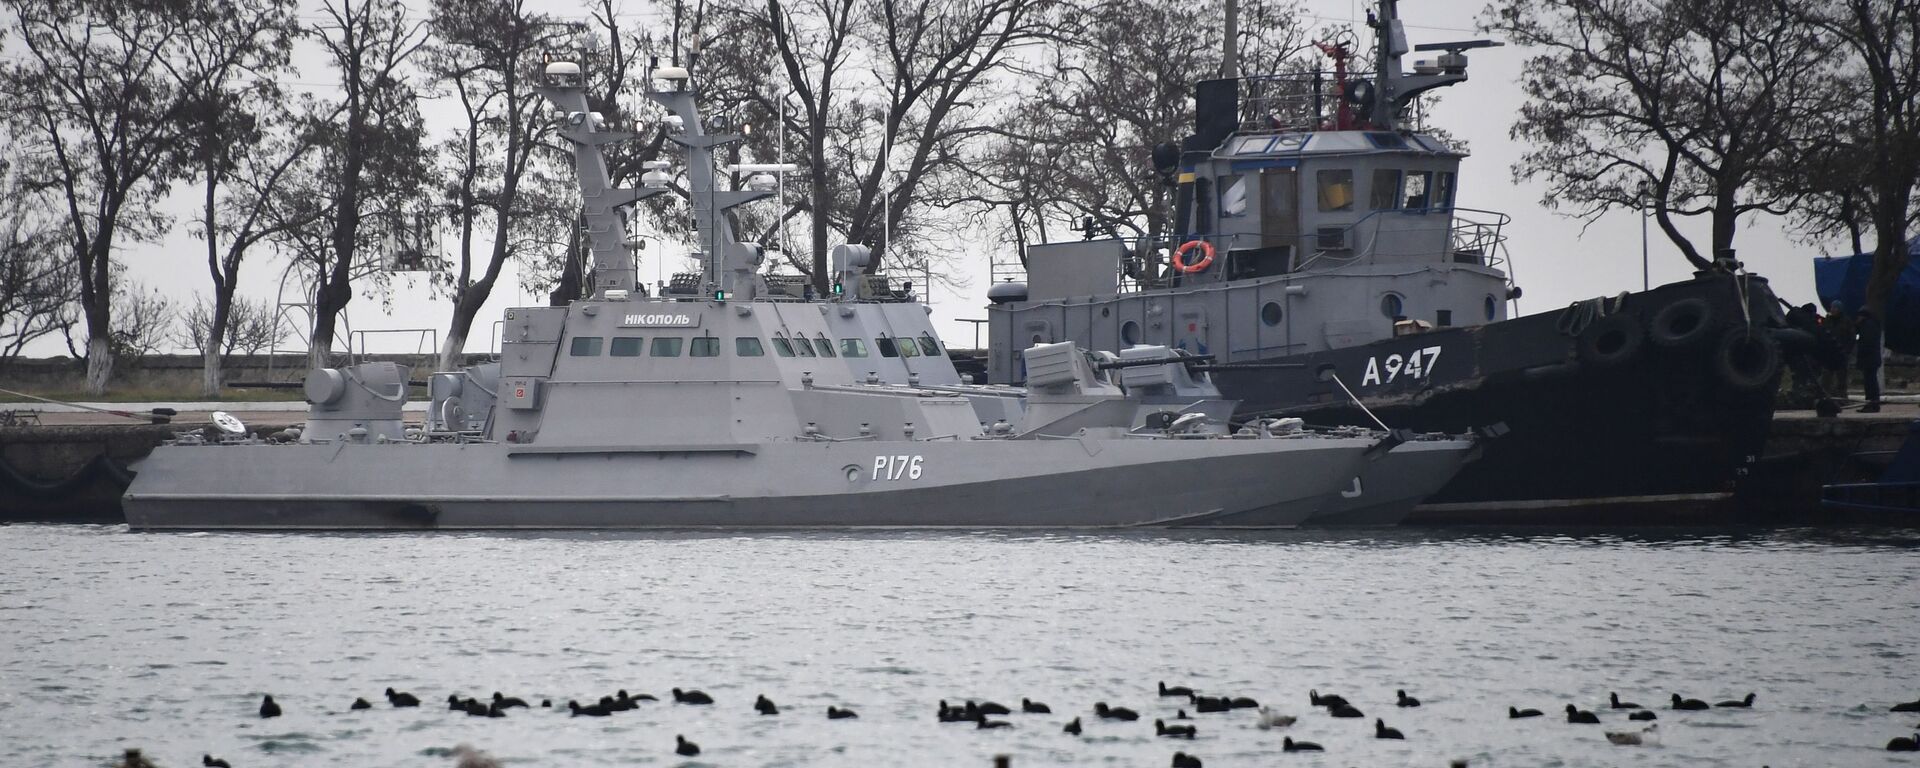 Задержанные украинские корабли доставлены в порт Керчи - Sputnik Latvija, 1920, 13.03.2019